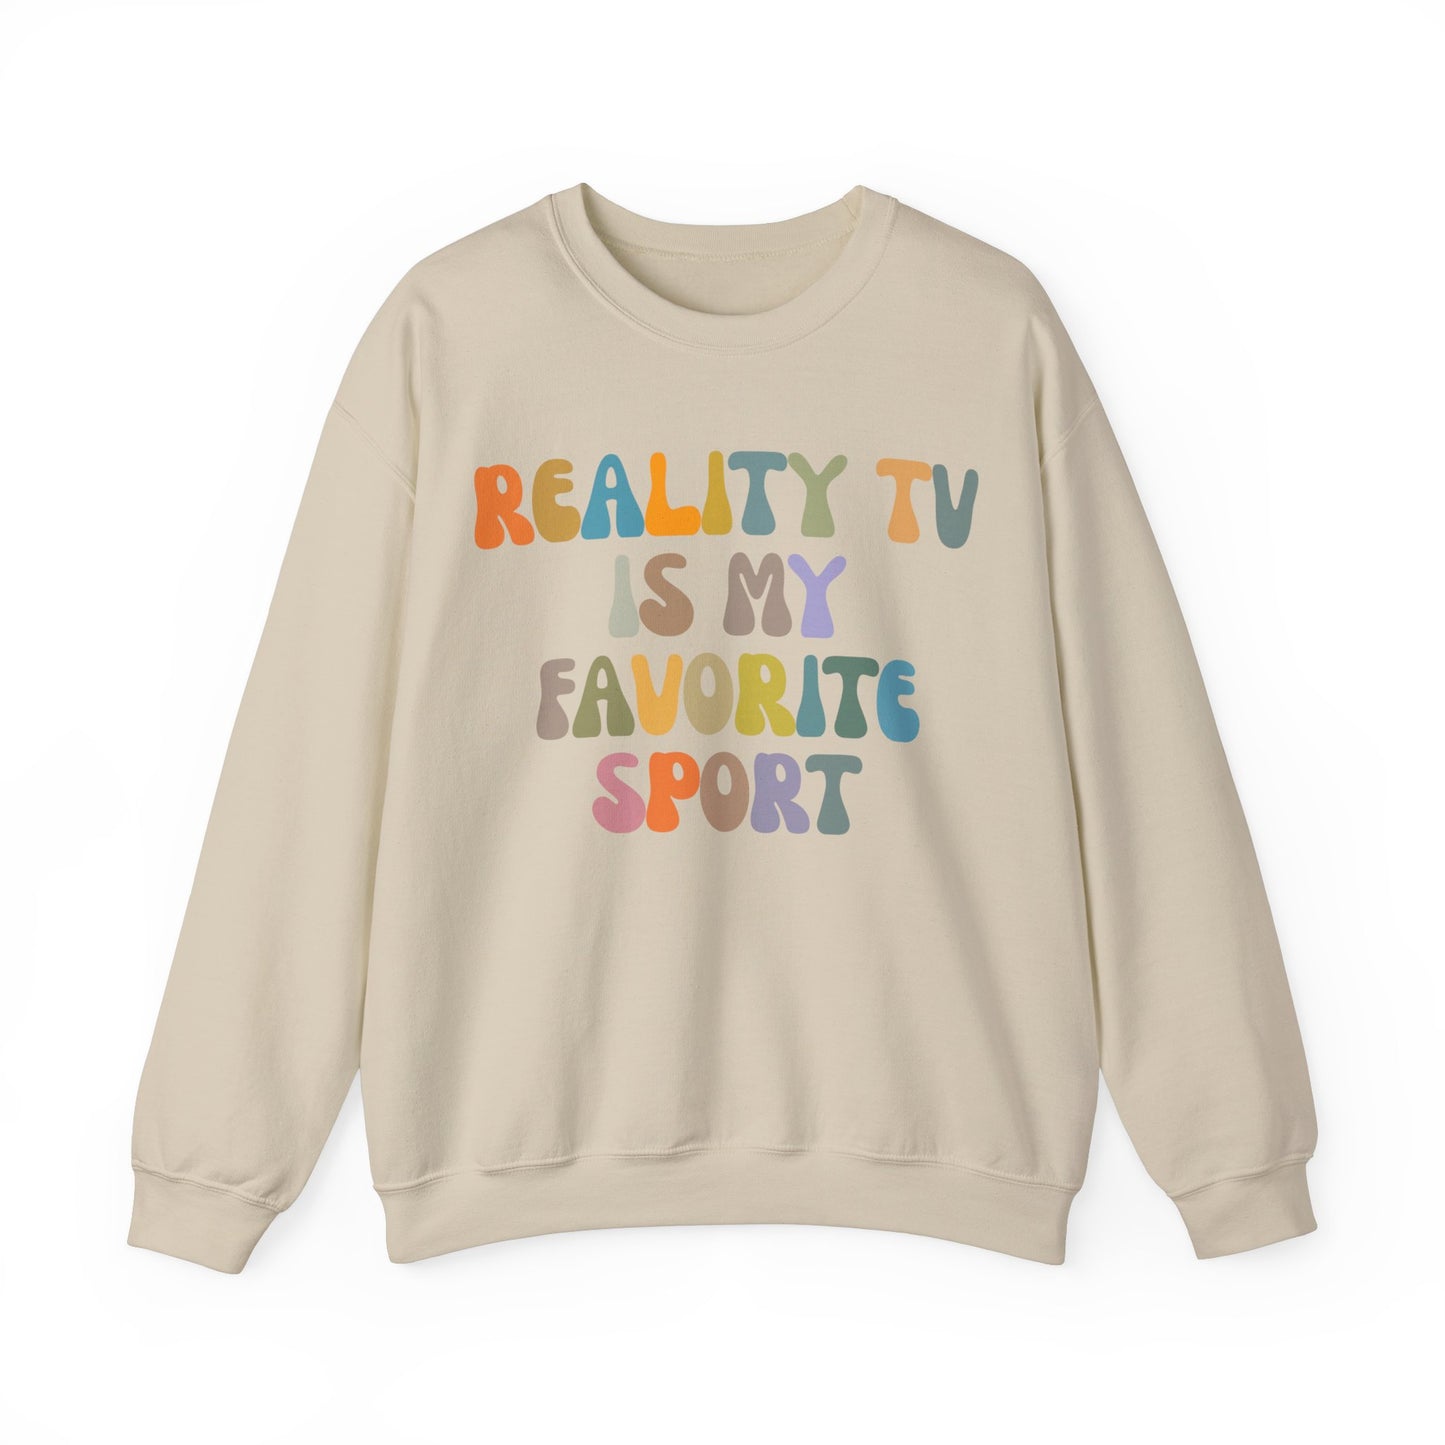 Reality TV Is My Favorite Sport Sweatshirt, Bachelor Fan Sweatshirt, Funny Shirt for Mom, Reality Television Fan Sweatshirt, S1501